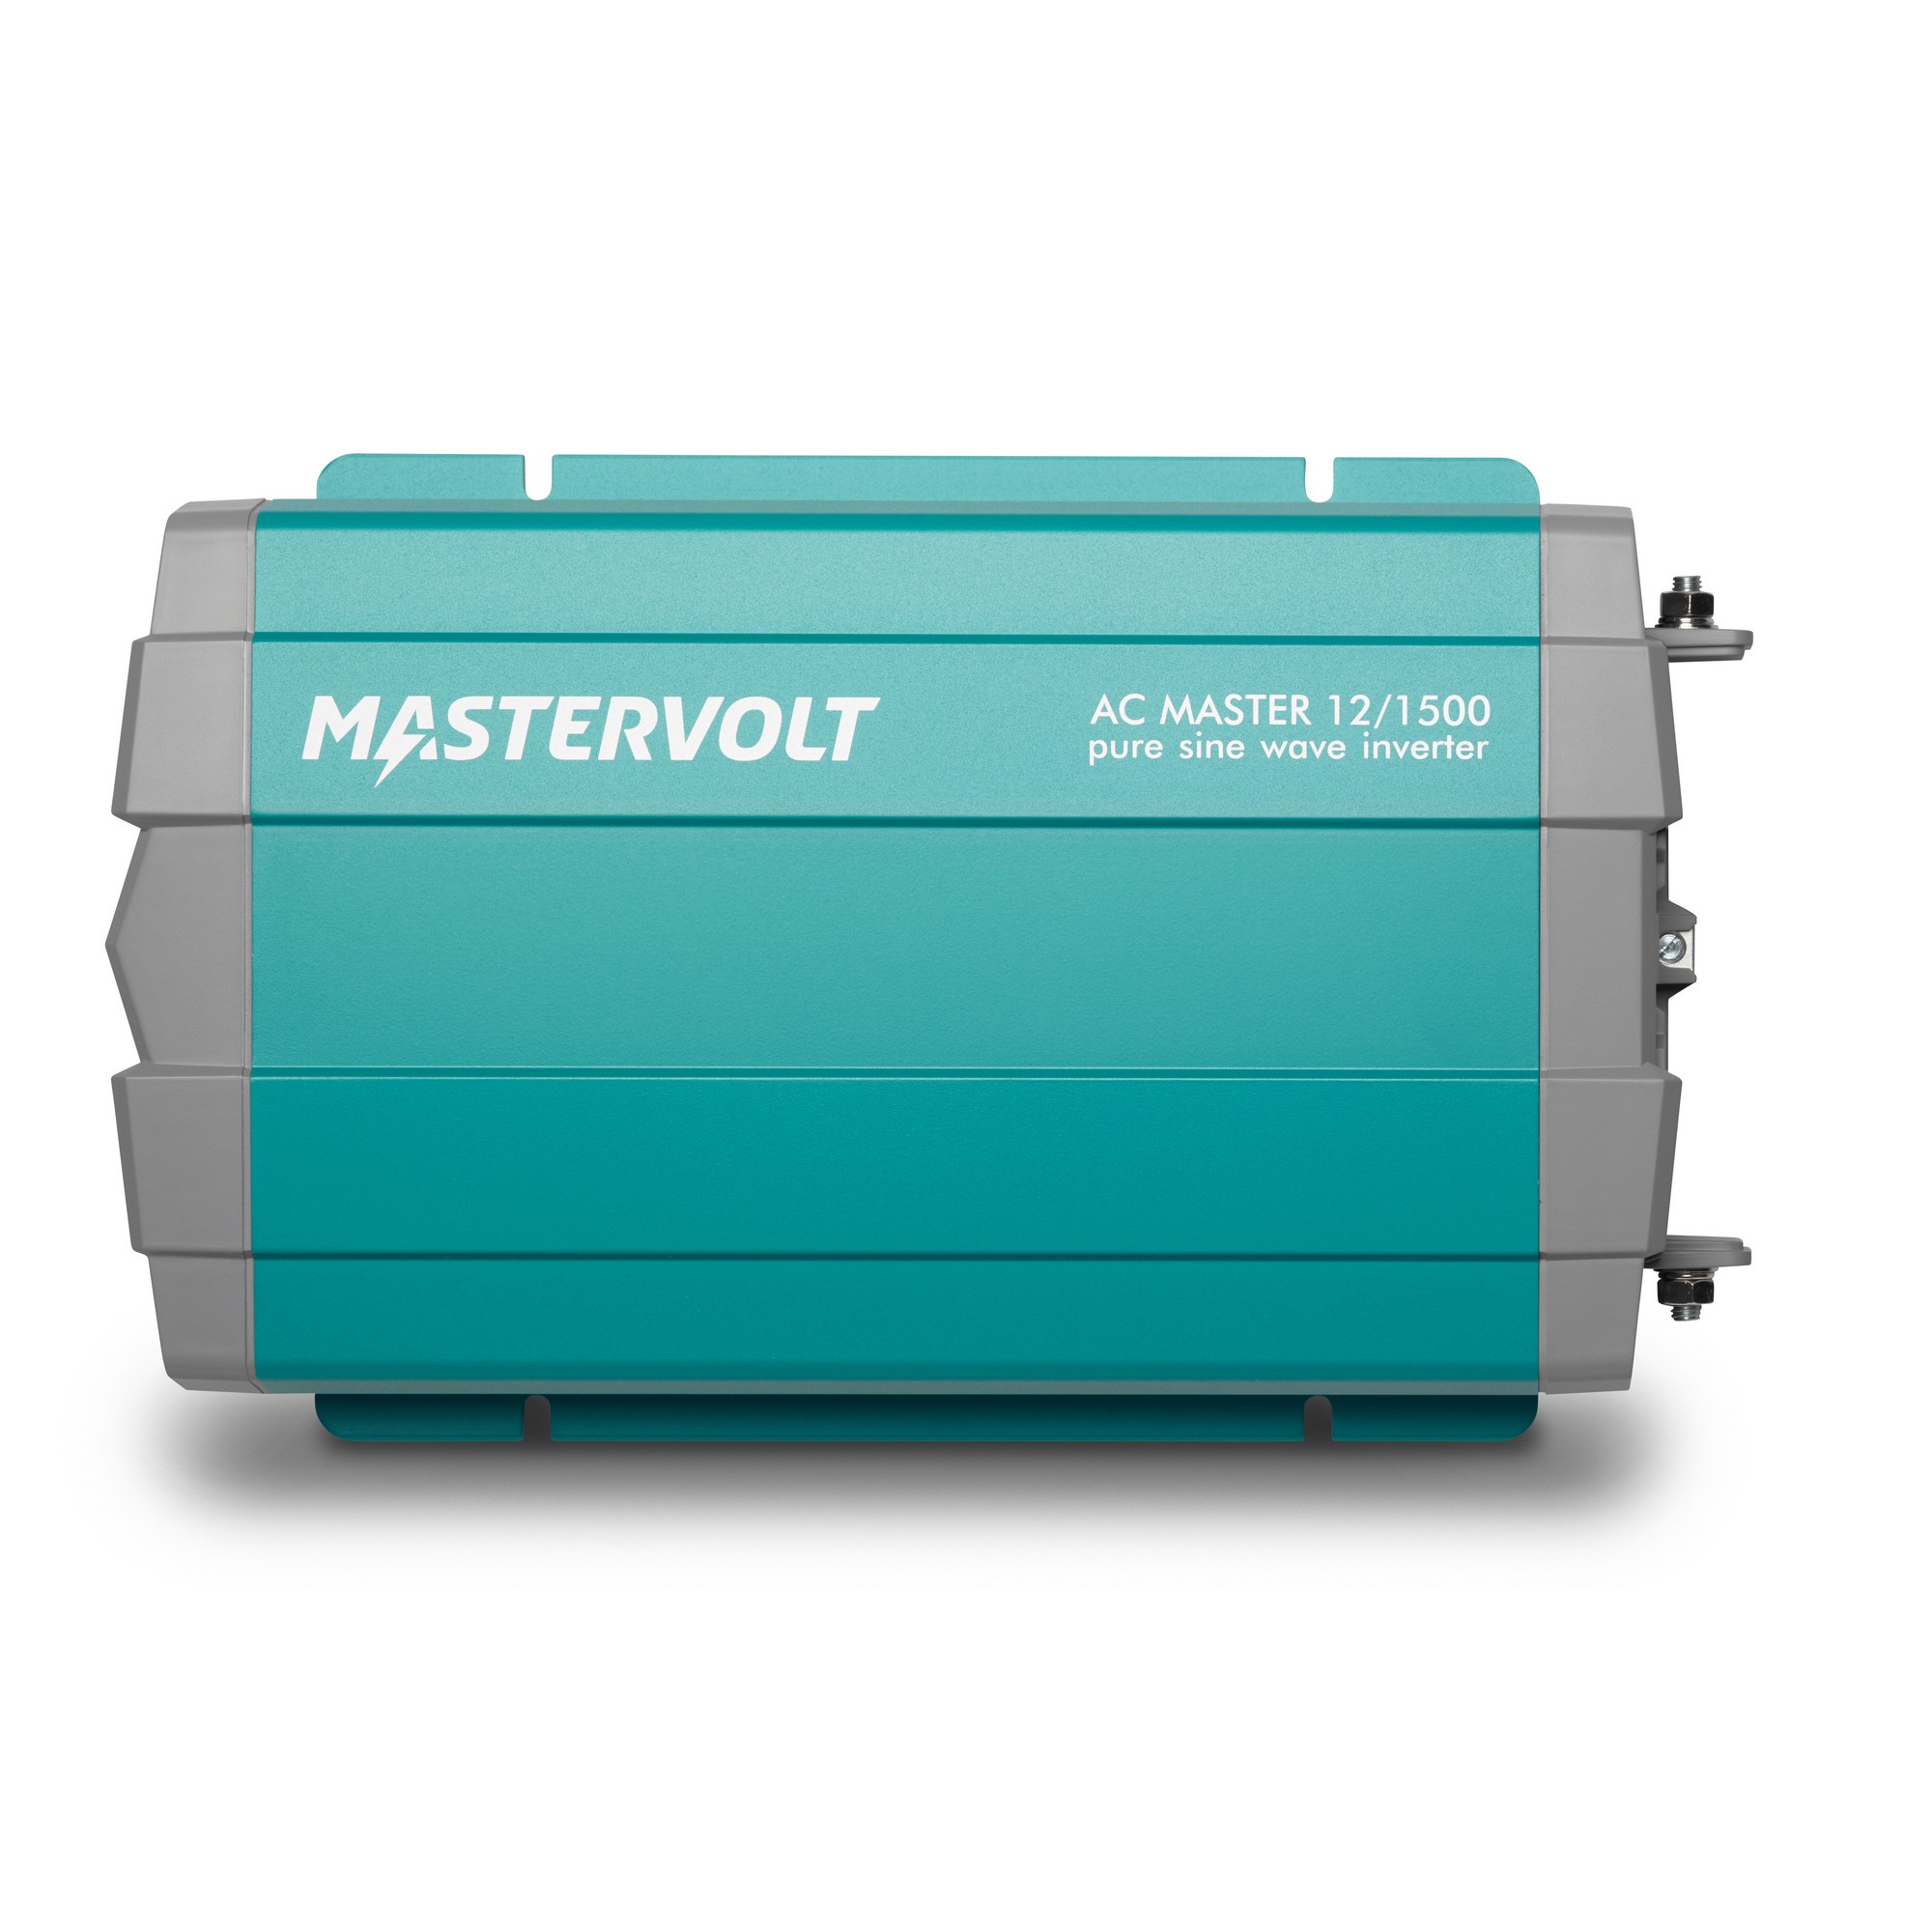 Синусоидальный инвертор Mastervolt AC Master 12/1500 28011500 12/230В 1500Вт 248x421x83мм IP21